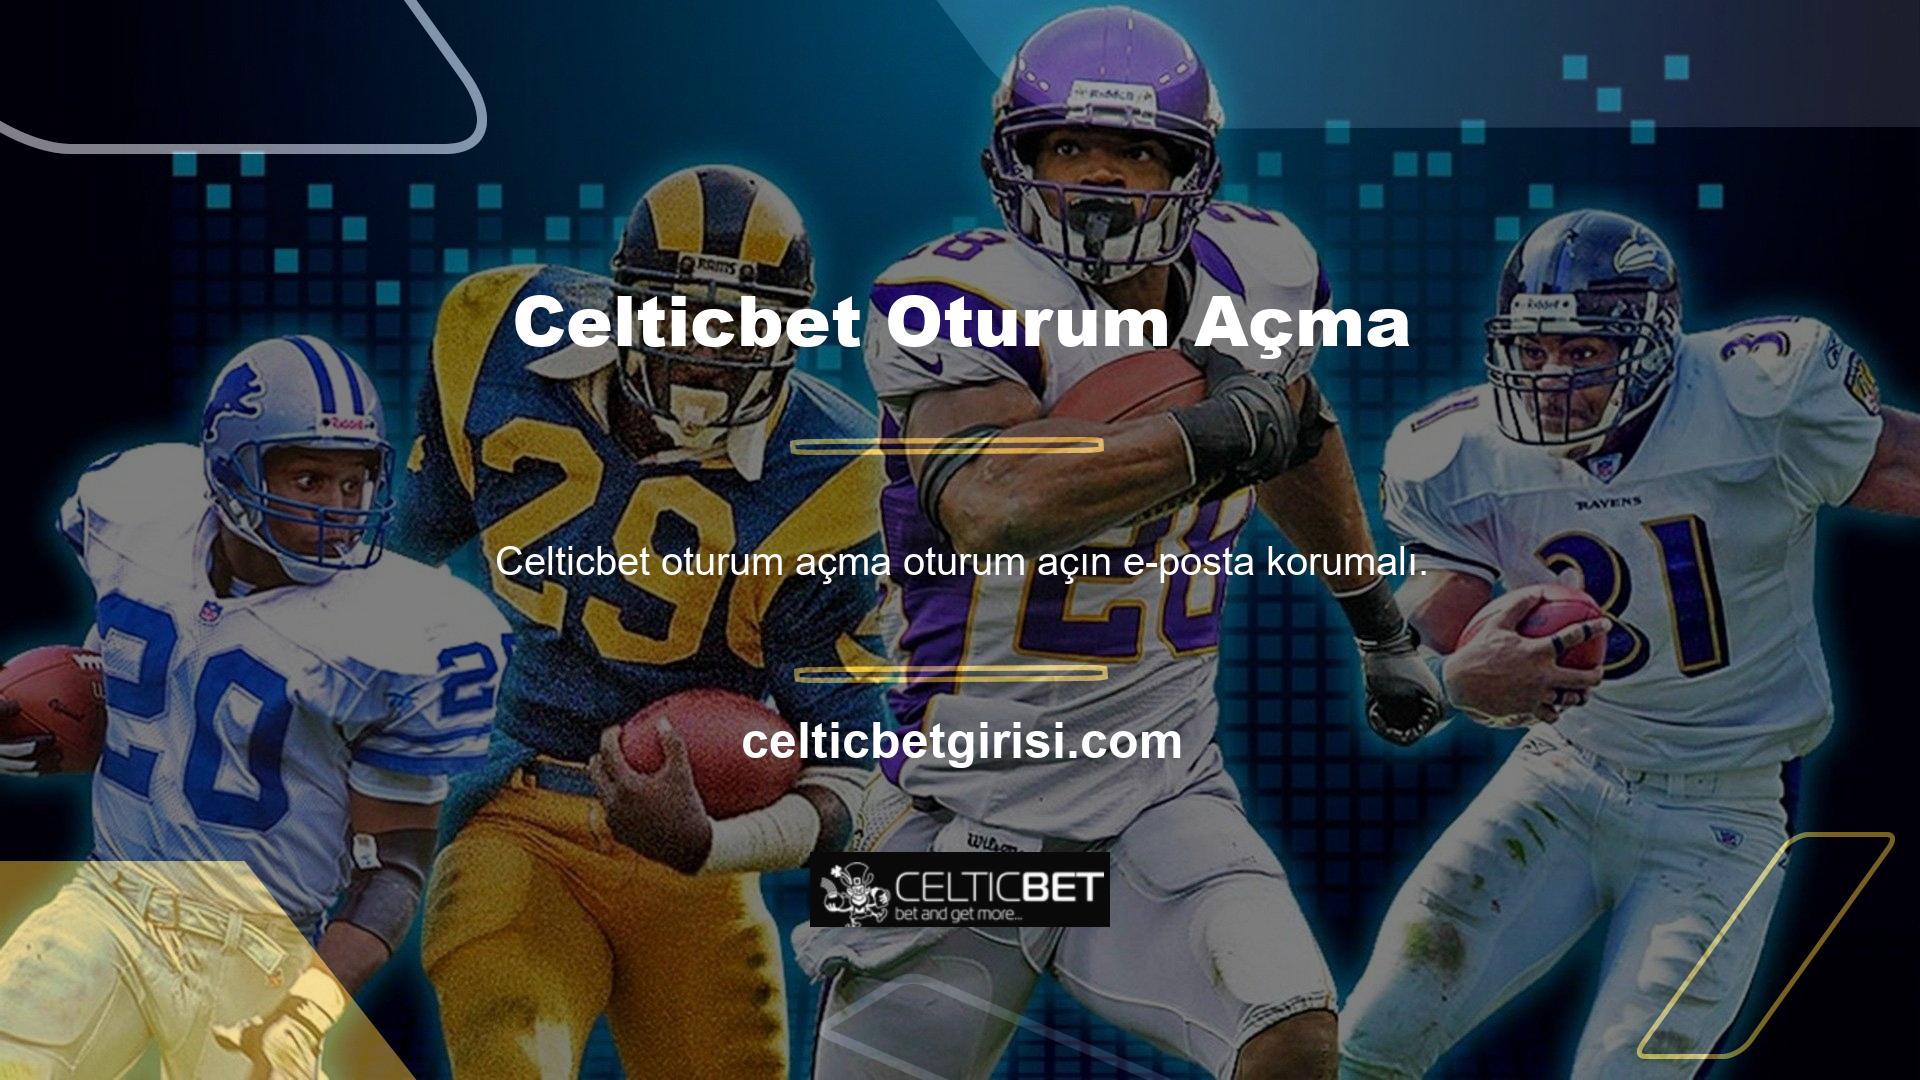 Celticbet, canlı bahis ve casino erişimine dayalı altyapısıyla piyasanın en iyilerinden biri olarak öne çıkıyor